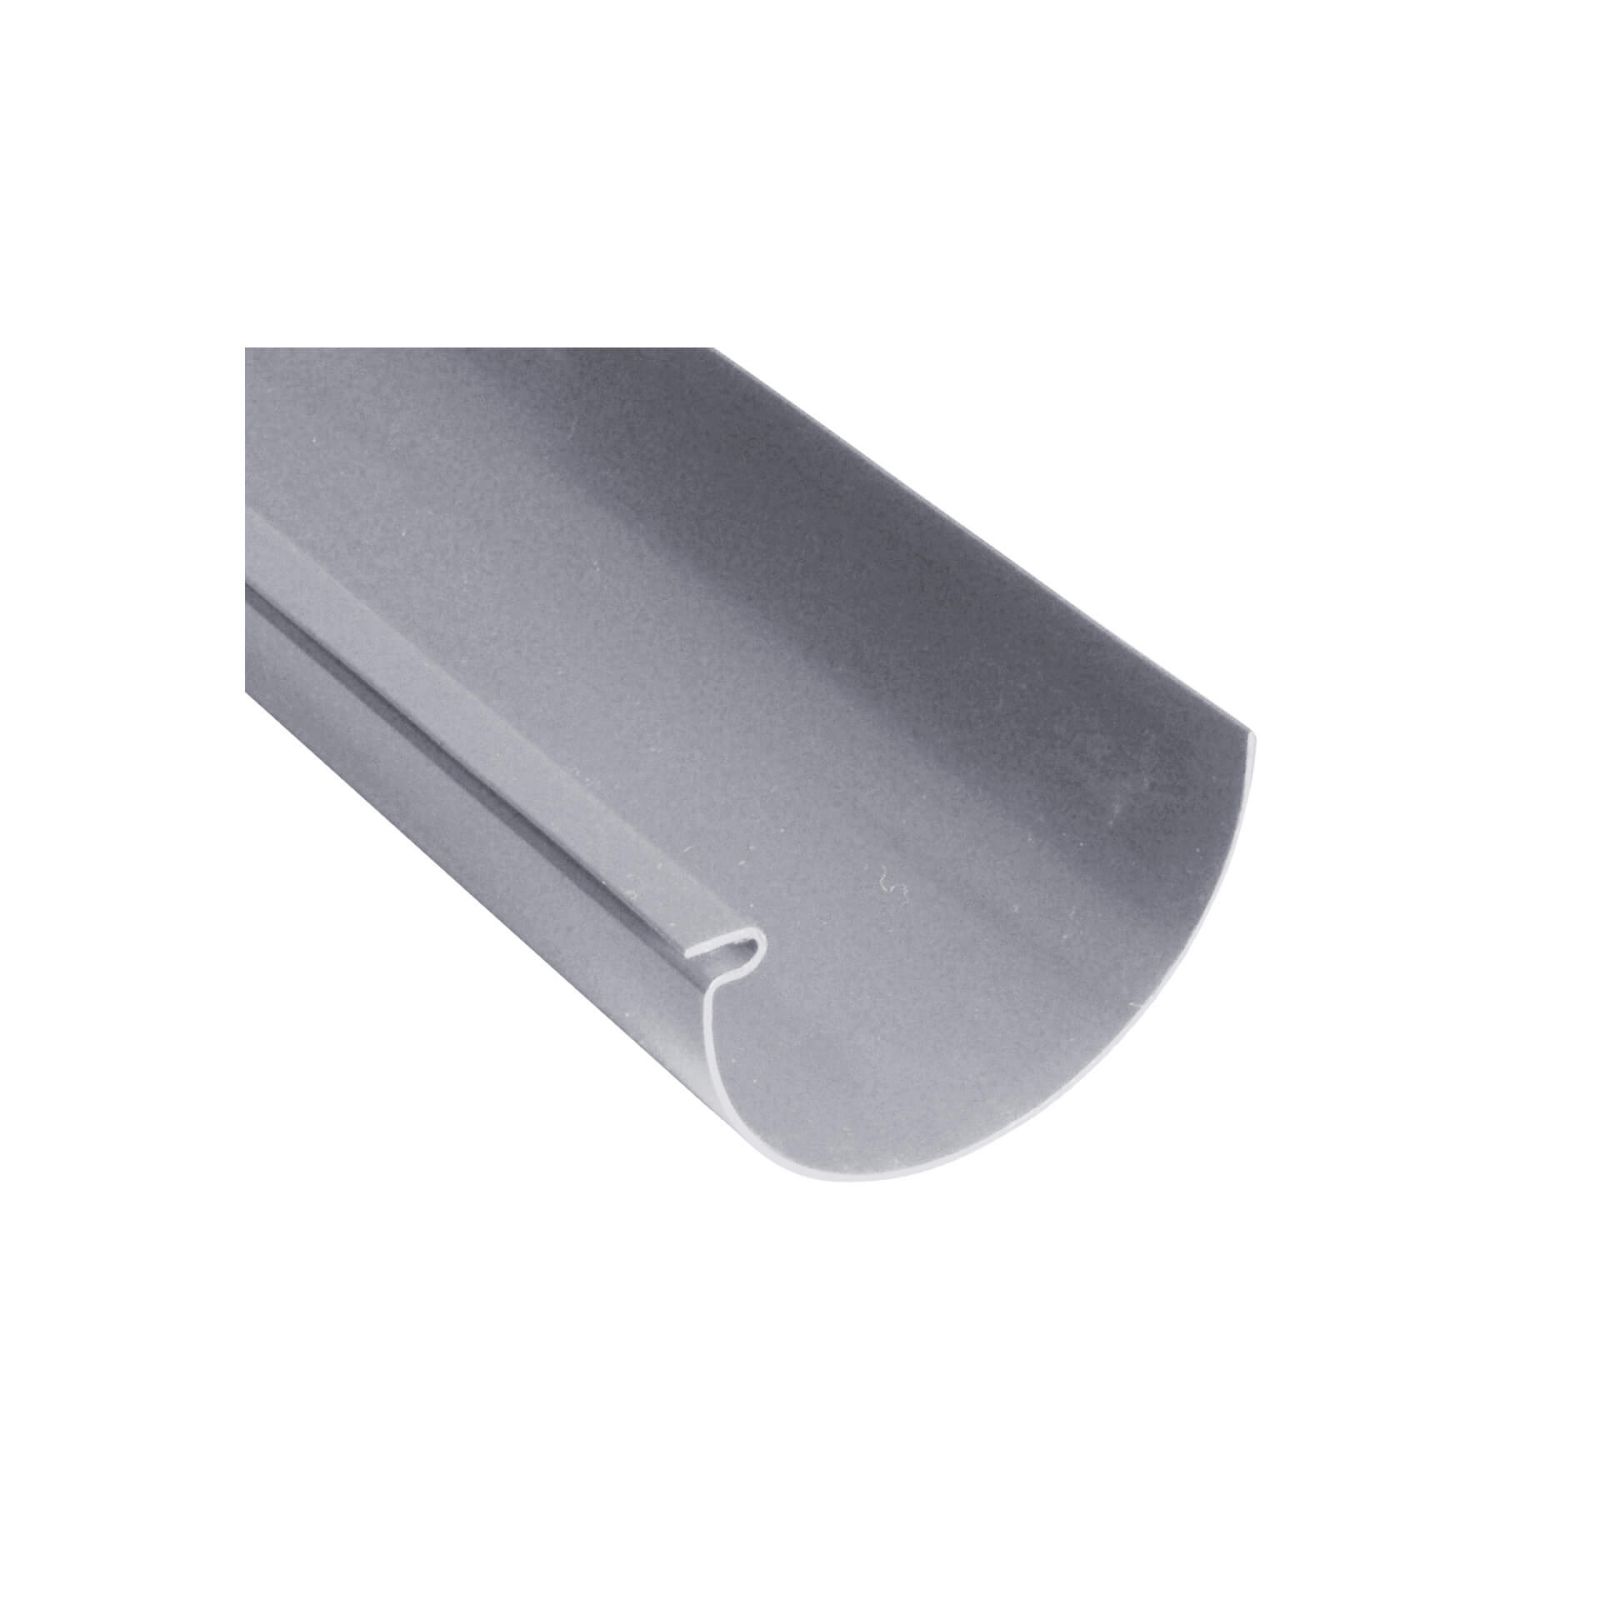 Kunststoff Dachrinnen Sparpaket 6 m | Ø 125/90 mm | Farbe Grau